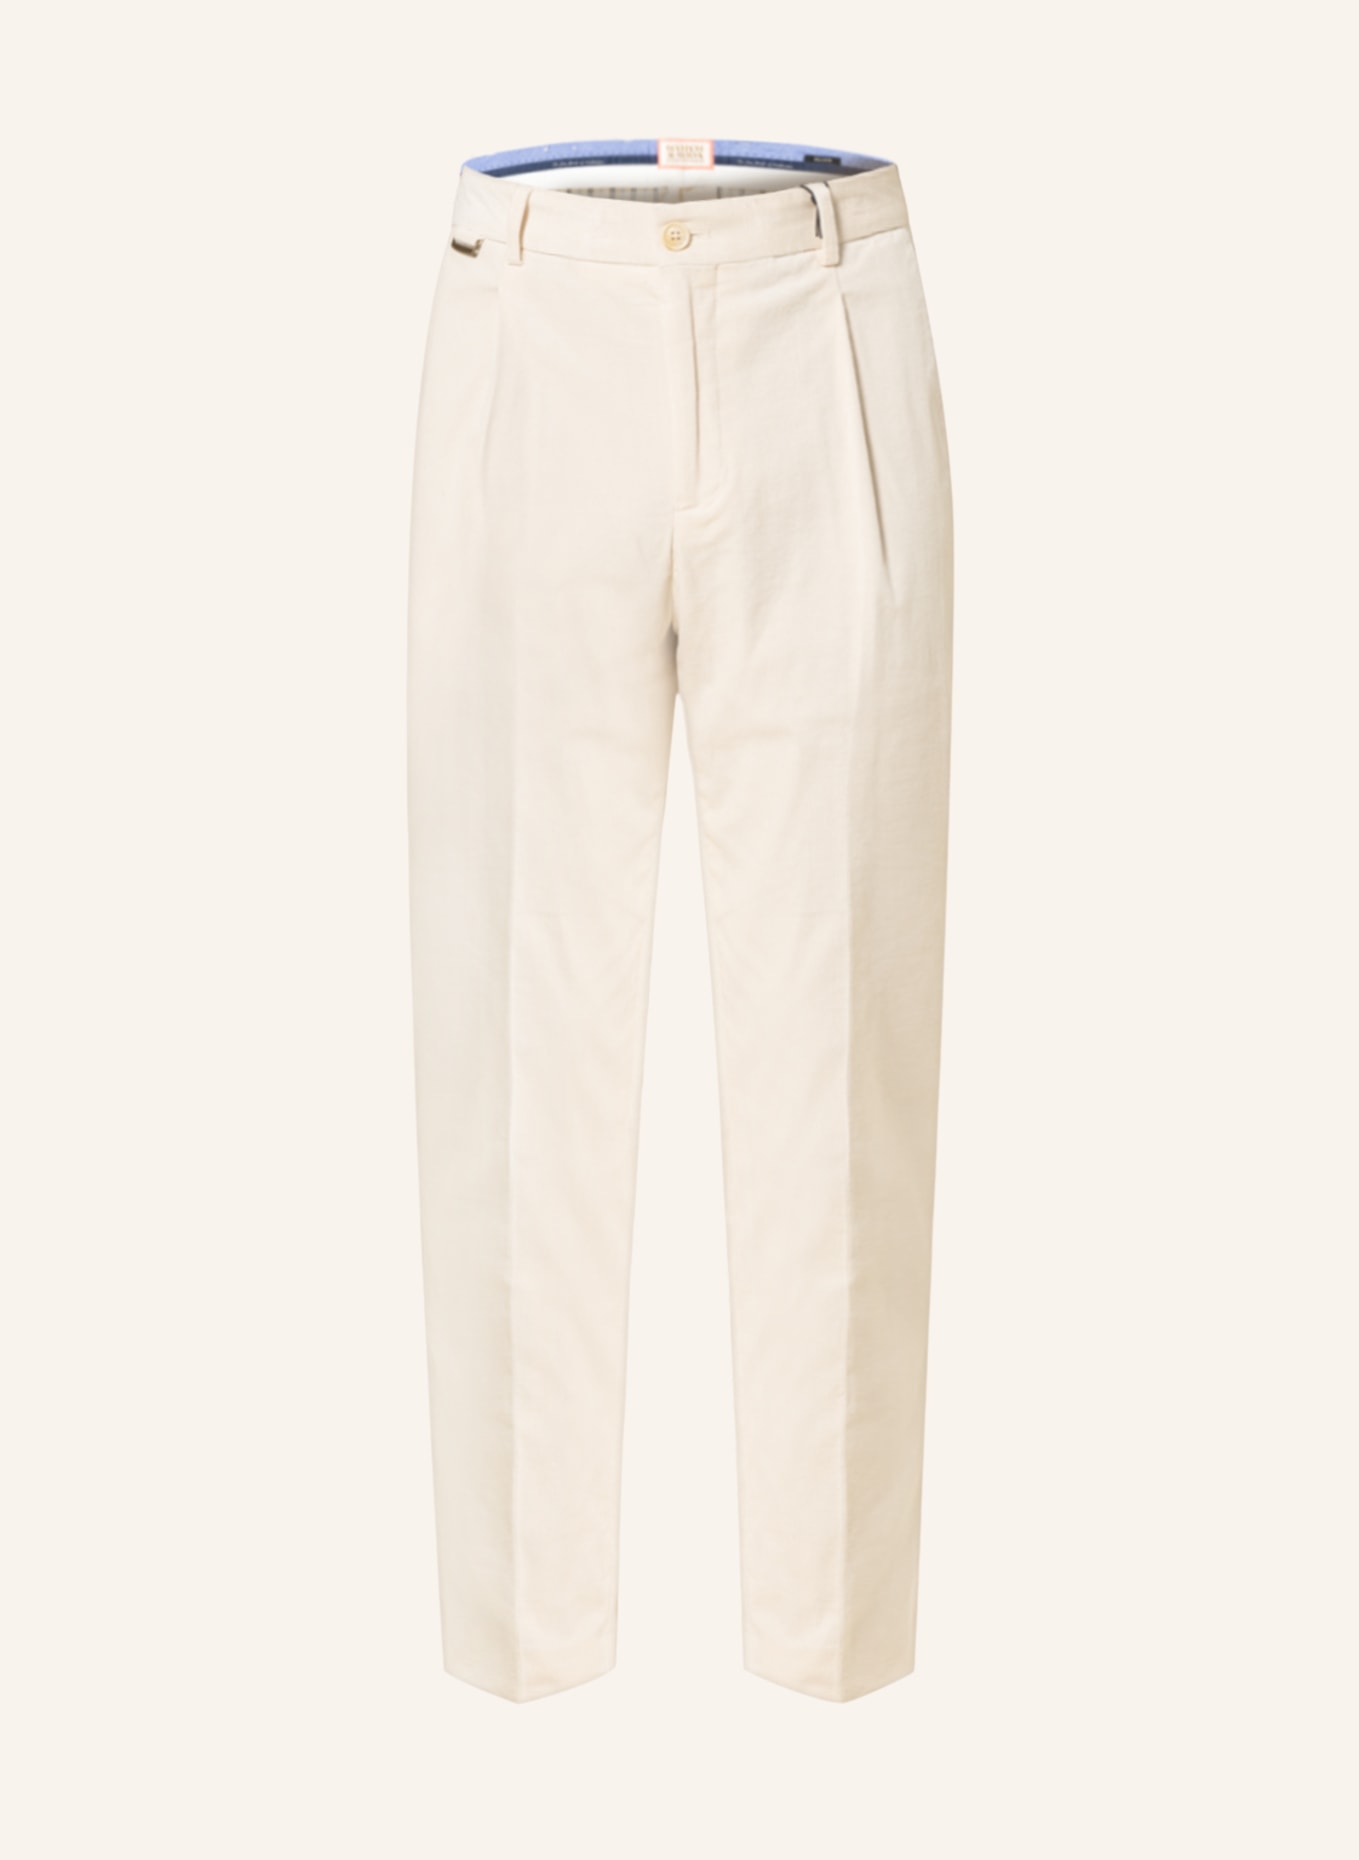 Regular Fit Corduroy trousers - Brown - Men | H&M IN